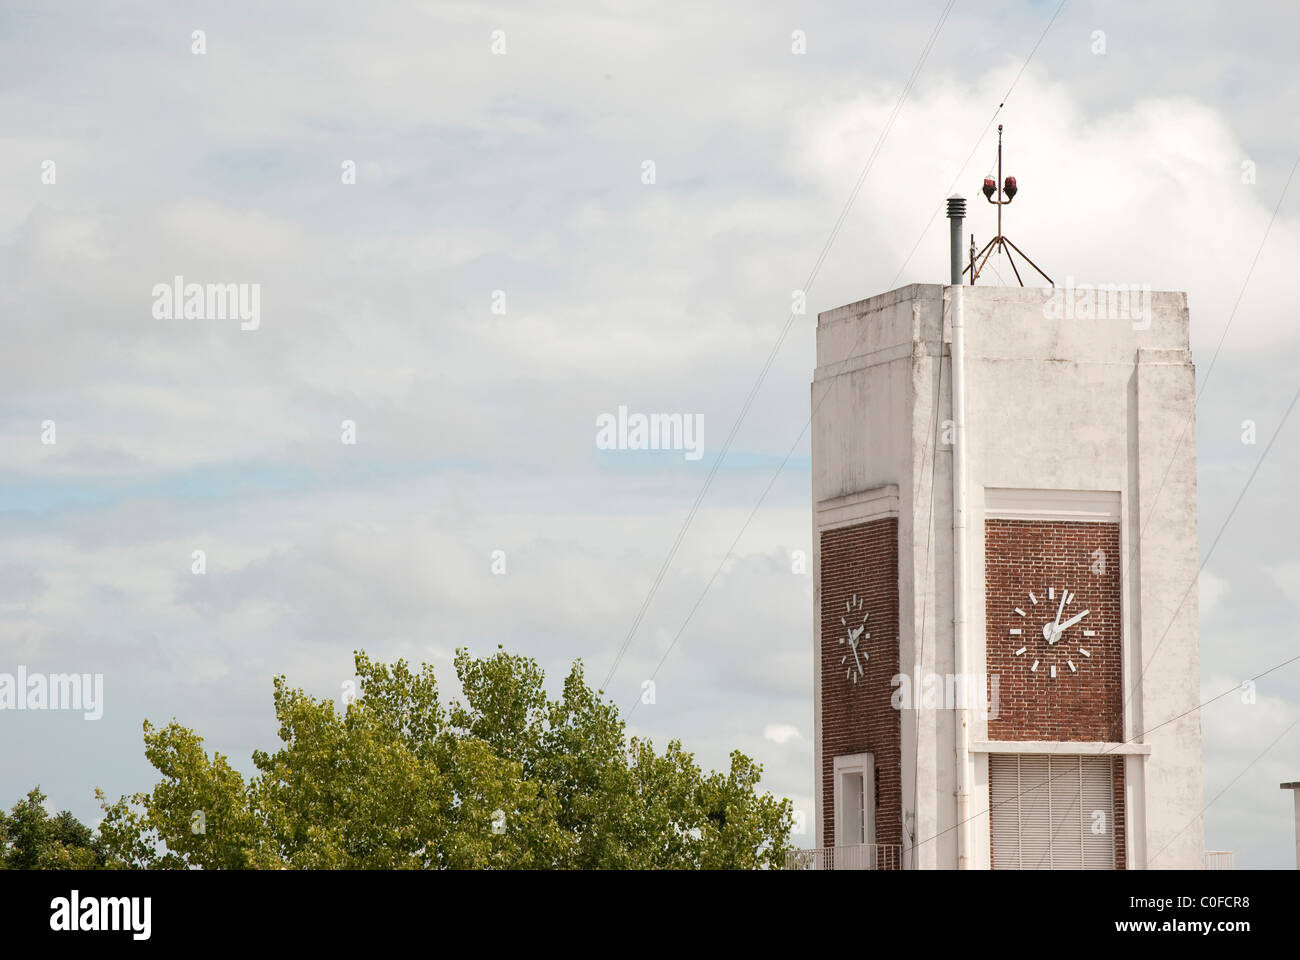 Clock tower Stockfoto